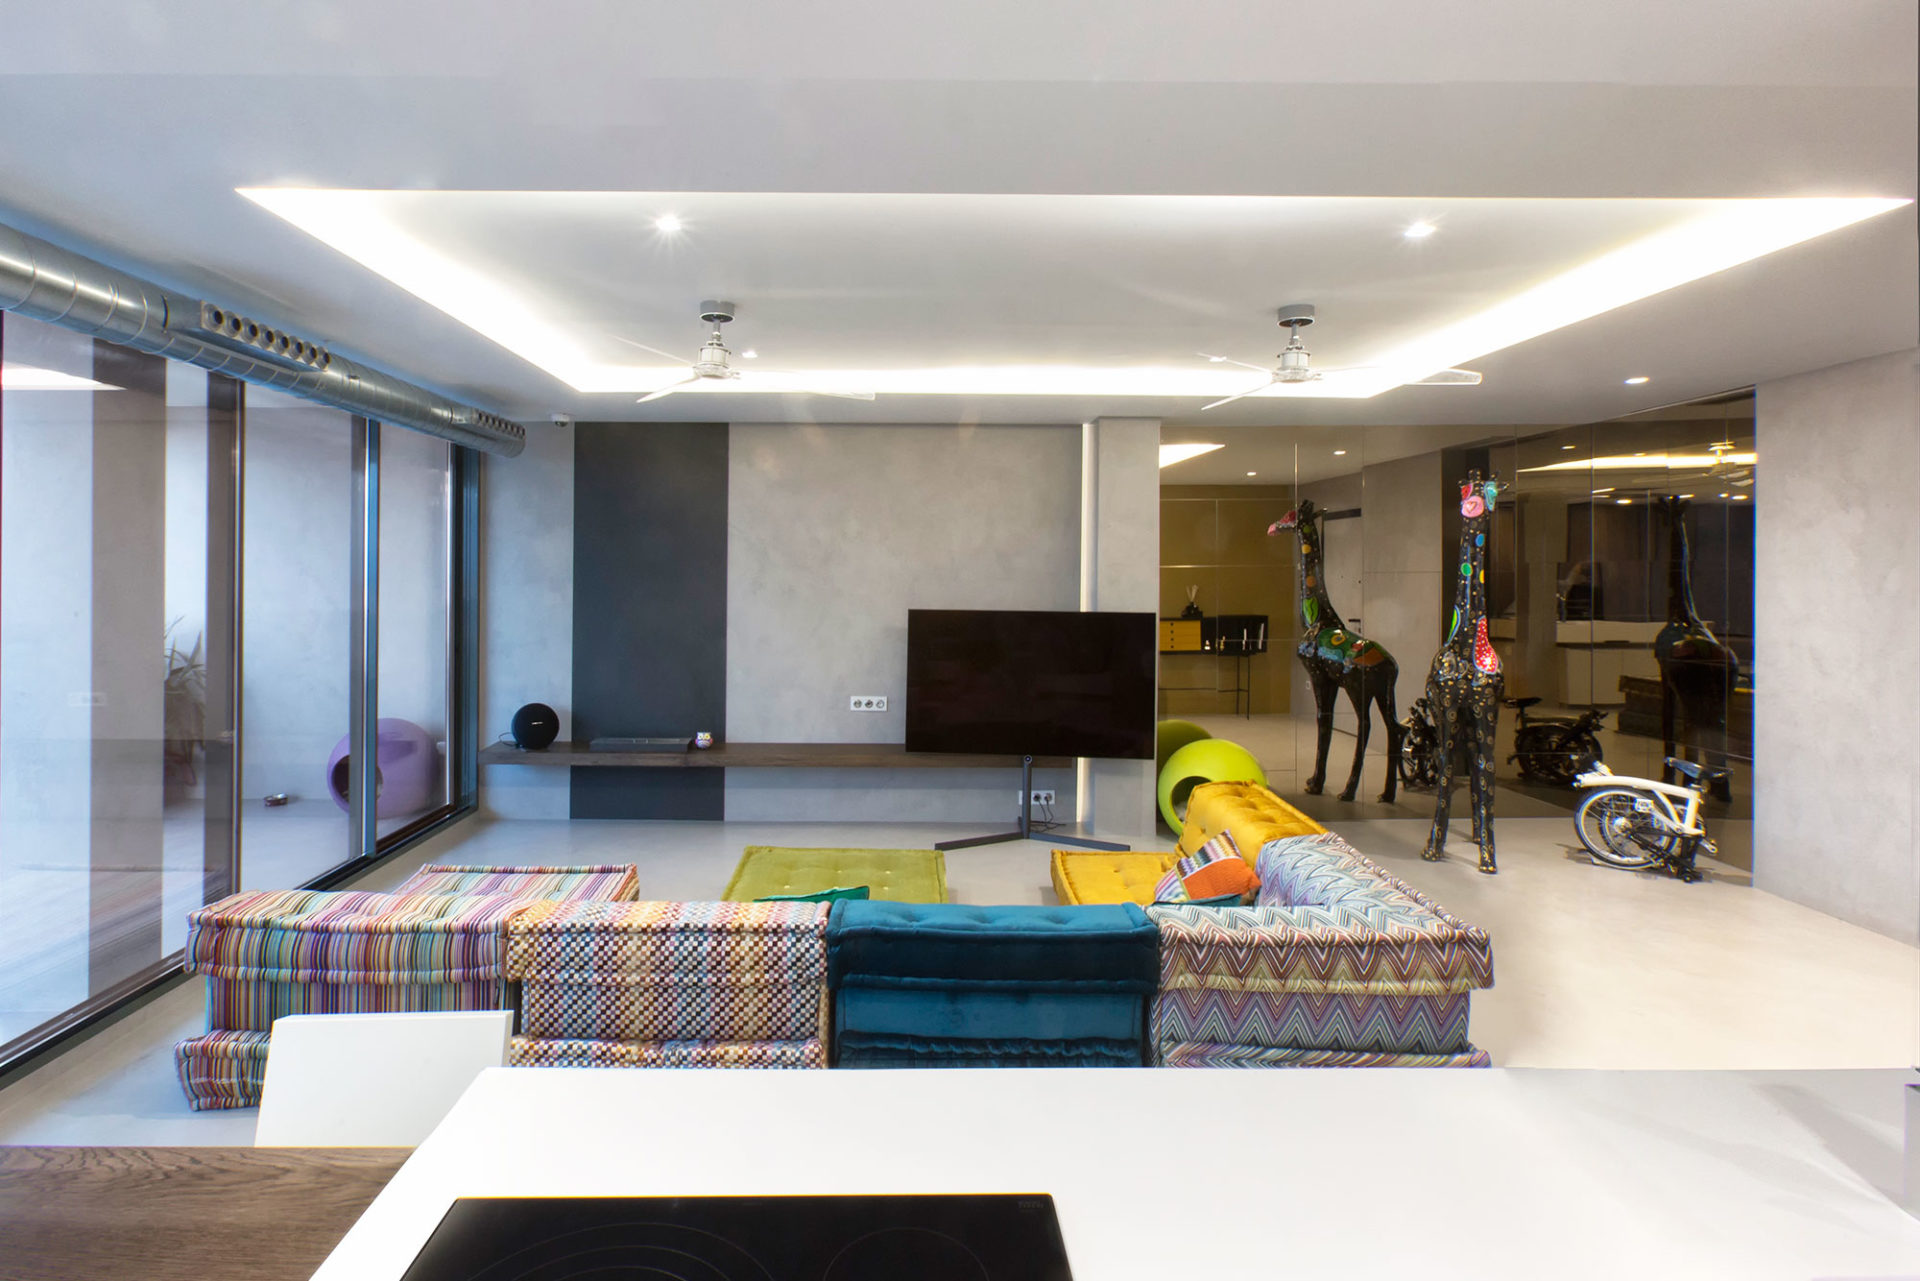 interiorismo salon con estilo estudio interioristas valencia sofas de diseño pavimento continuo tejidos estampados llamativos